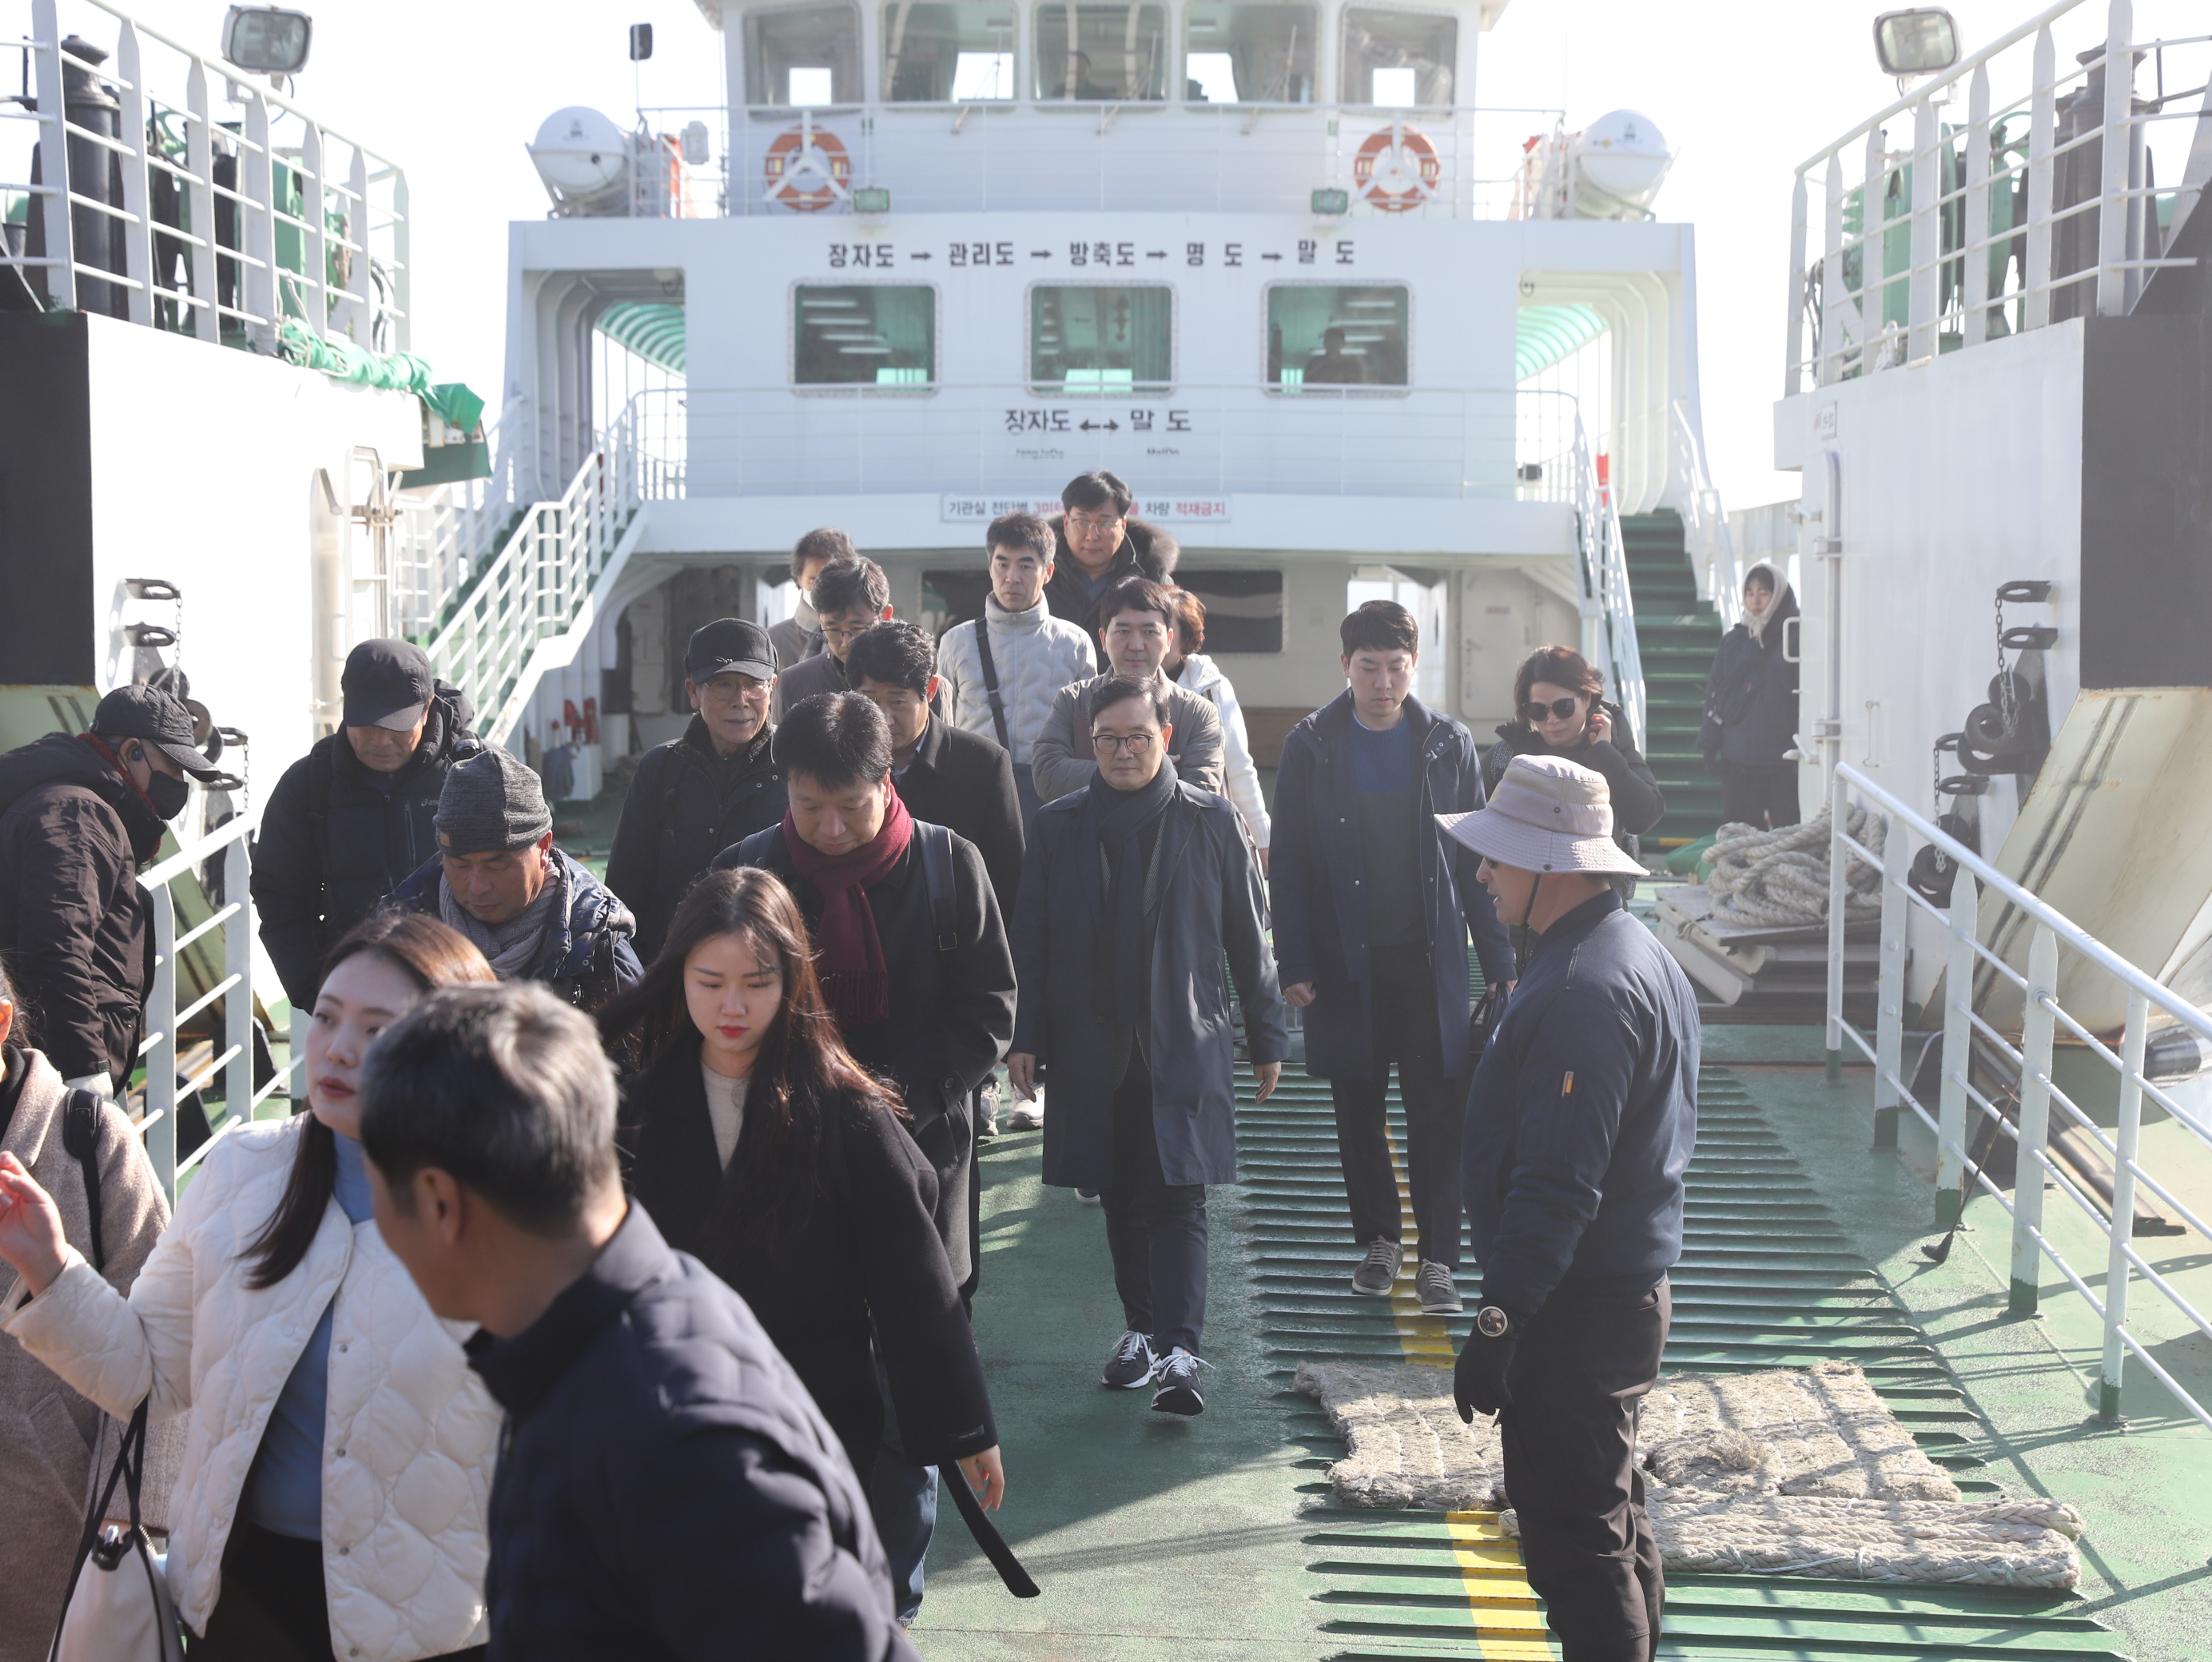 오동호 원장을 비롯한 한국섬진흥원 방문단이 여객선에서 하선하는 모습